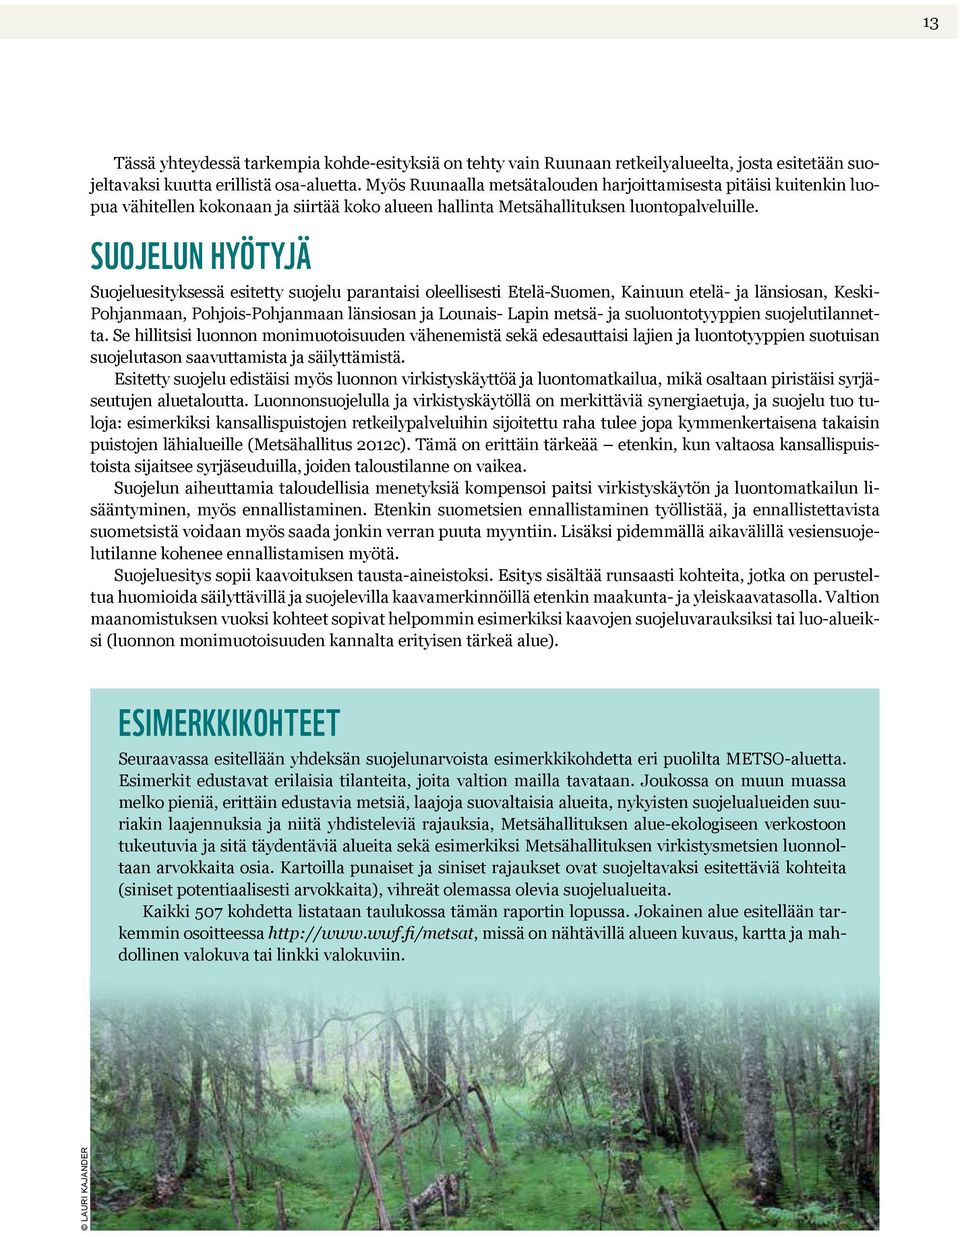 Suojelun hyötyjä Suojeluesityksessä esitetty suojelu parantaisi oleellisesti Etelä-Suomen, Kainuun etelä- ja länsiosan, Keski- Pohjanmaan, Pohjois-Pohjanmaan länsiosan ja Lounais- Lapin metsä- ja